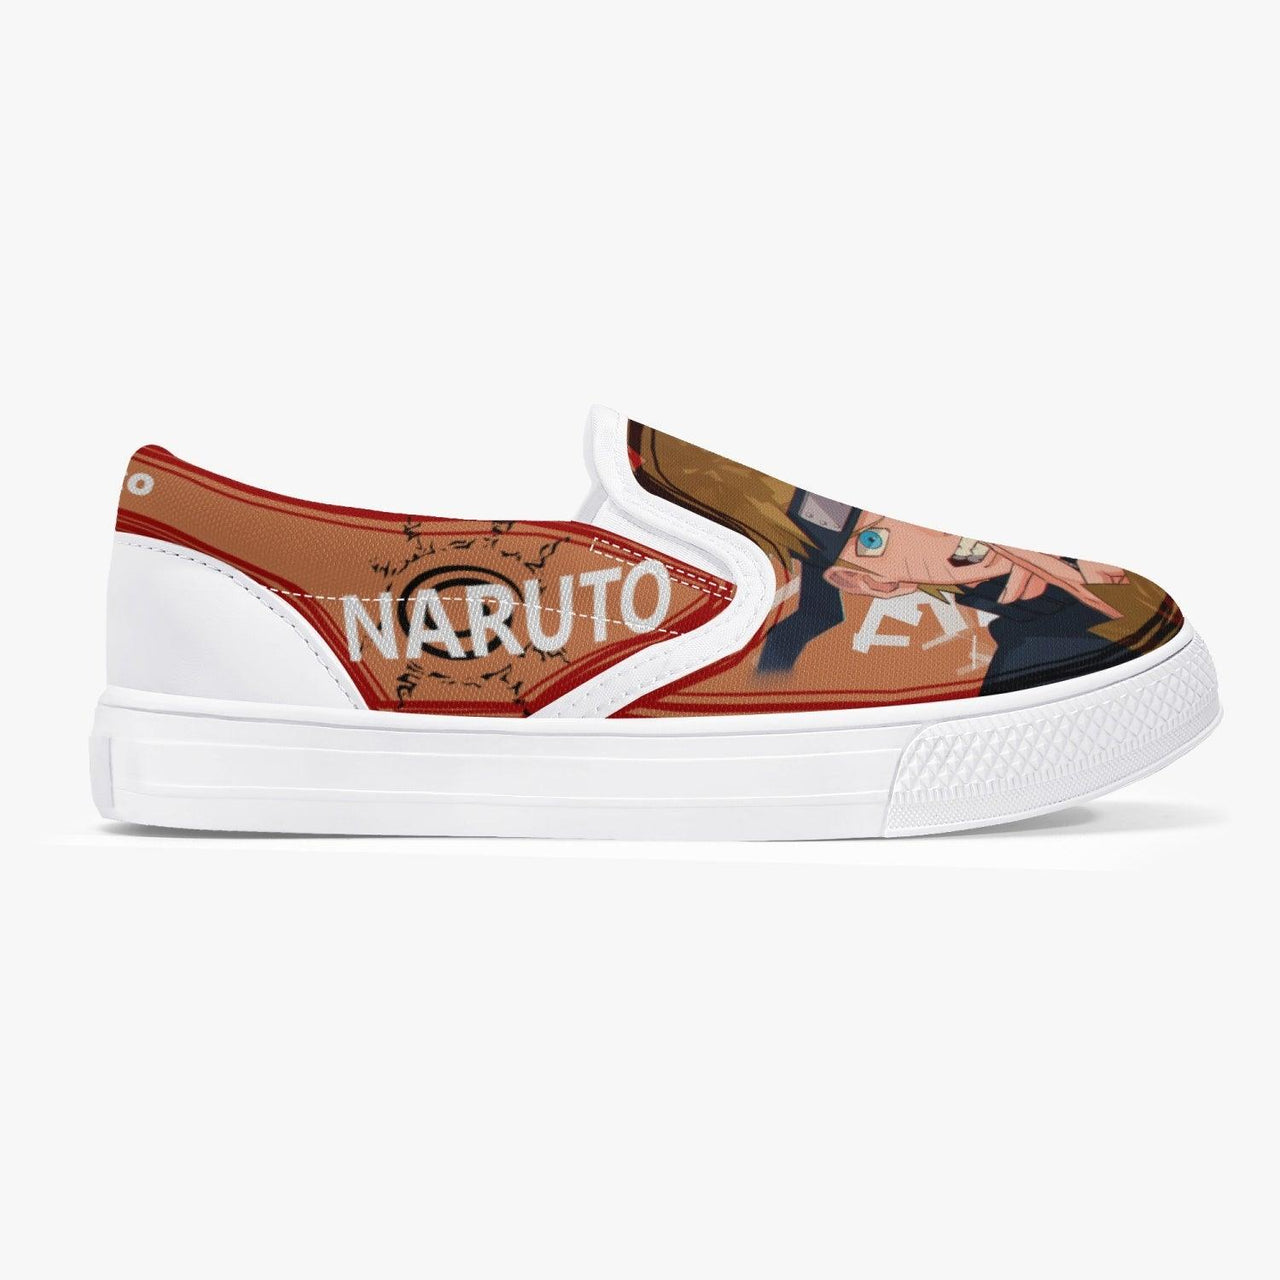 Naruto Shippuden Naruto Kids Slip Ons Anime Shoes _ Naruto _ Ayuko